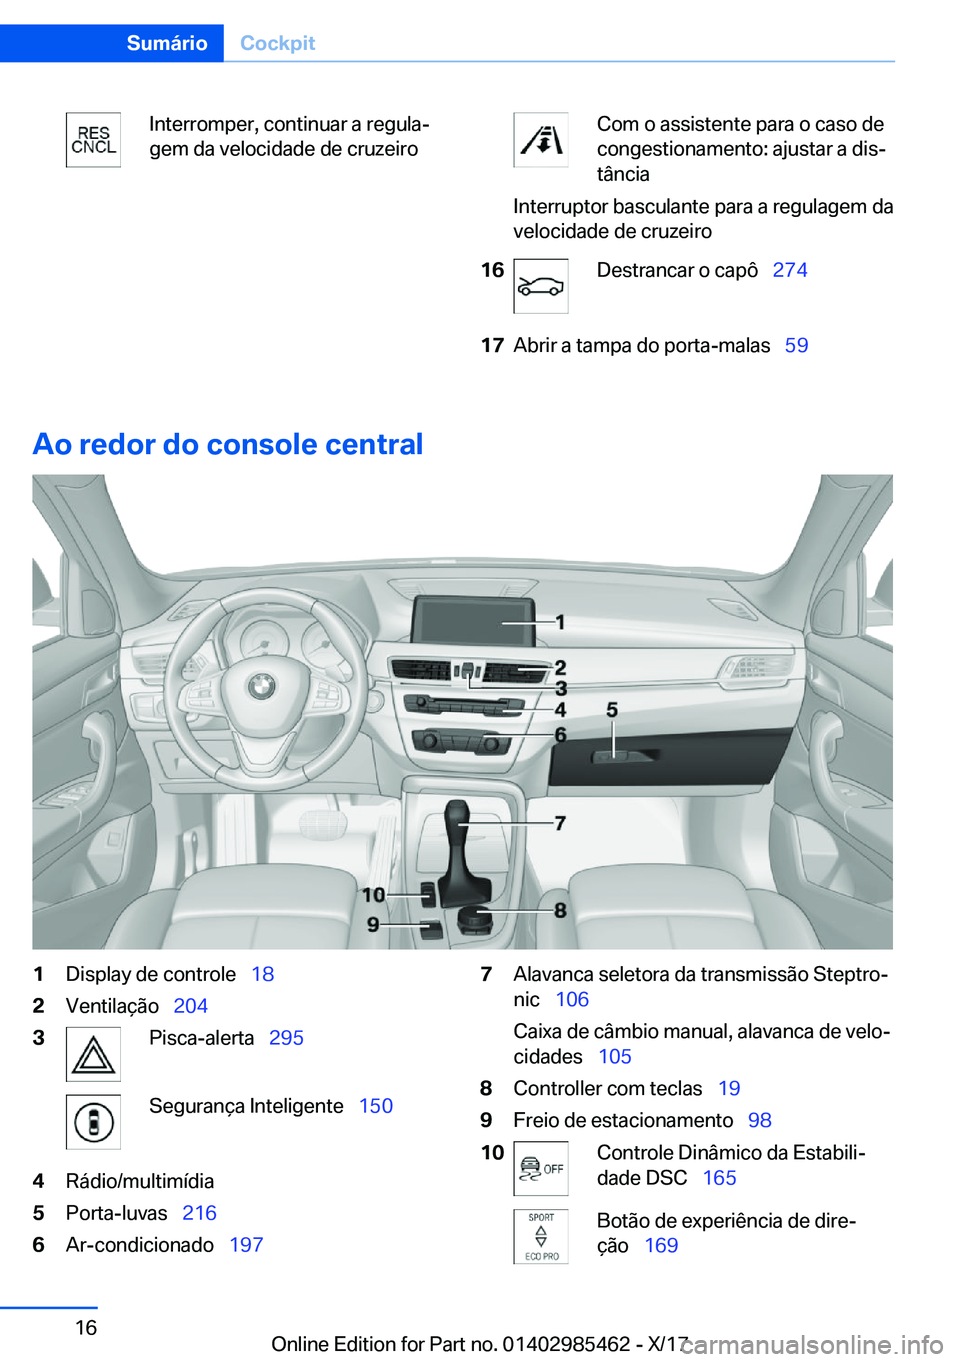 BMW X1 2018  Manual do condutor (in Portuguese) �I�n�t�e�r�r�o�m�p�e�r�,� �c�o�n�t�i�n�u�a�r� �a� �r�e�g�u�l�aª
�g�e�m� �d�a� �v�e�l�o�c�i�d�a�d�e� �d�e� �c�r�u�z�e�i�r�o�C�o�m� �o� �a�s�s�i�s�t�e�n�t�e� �p�a�r�a� �o� �c�a�s�o� �d�e
�c�o�n�g�e�s�